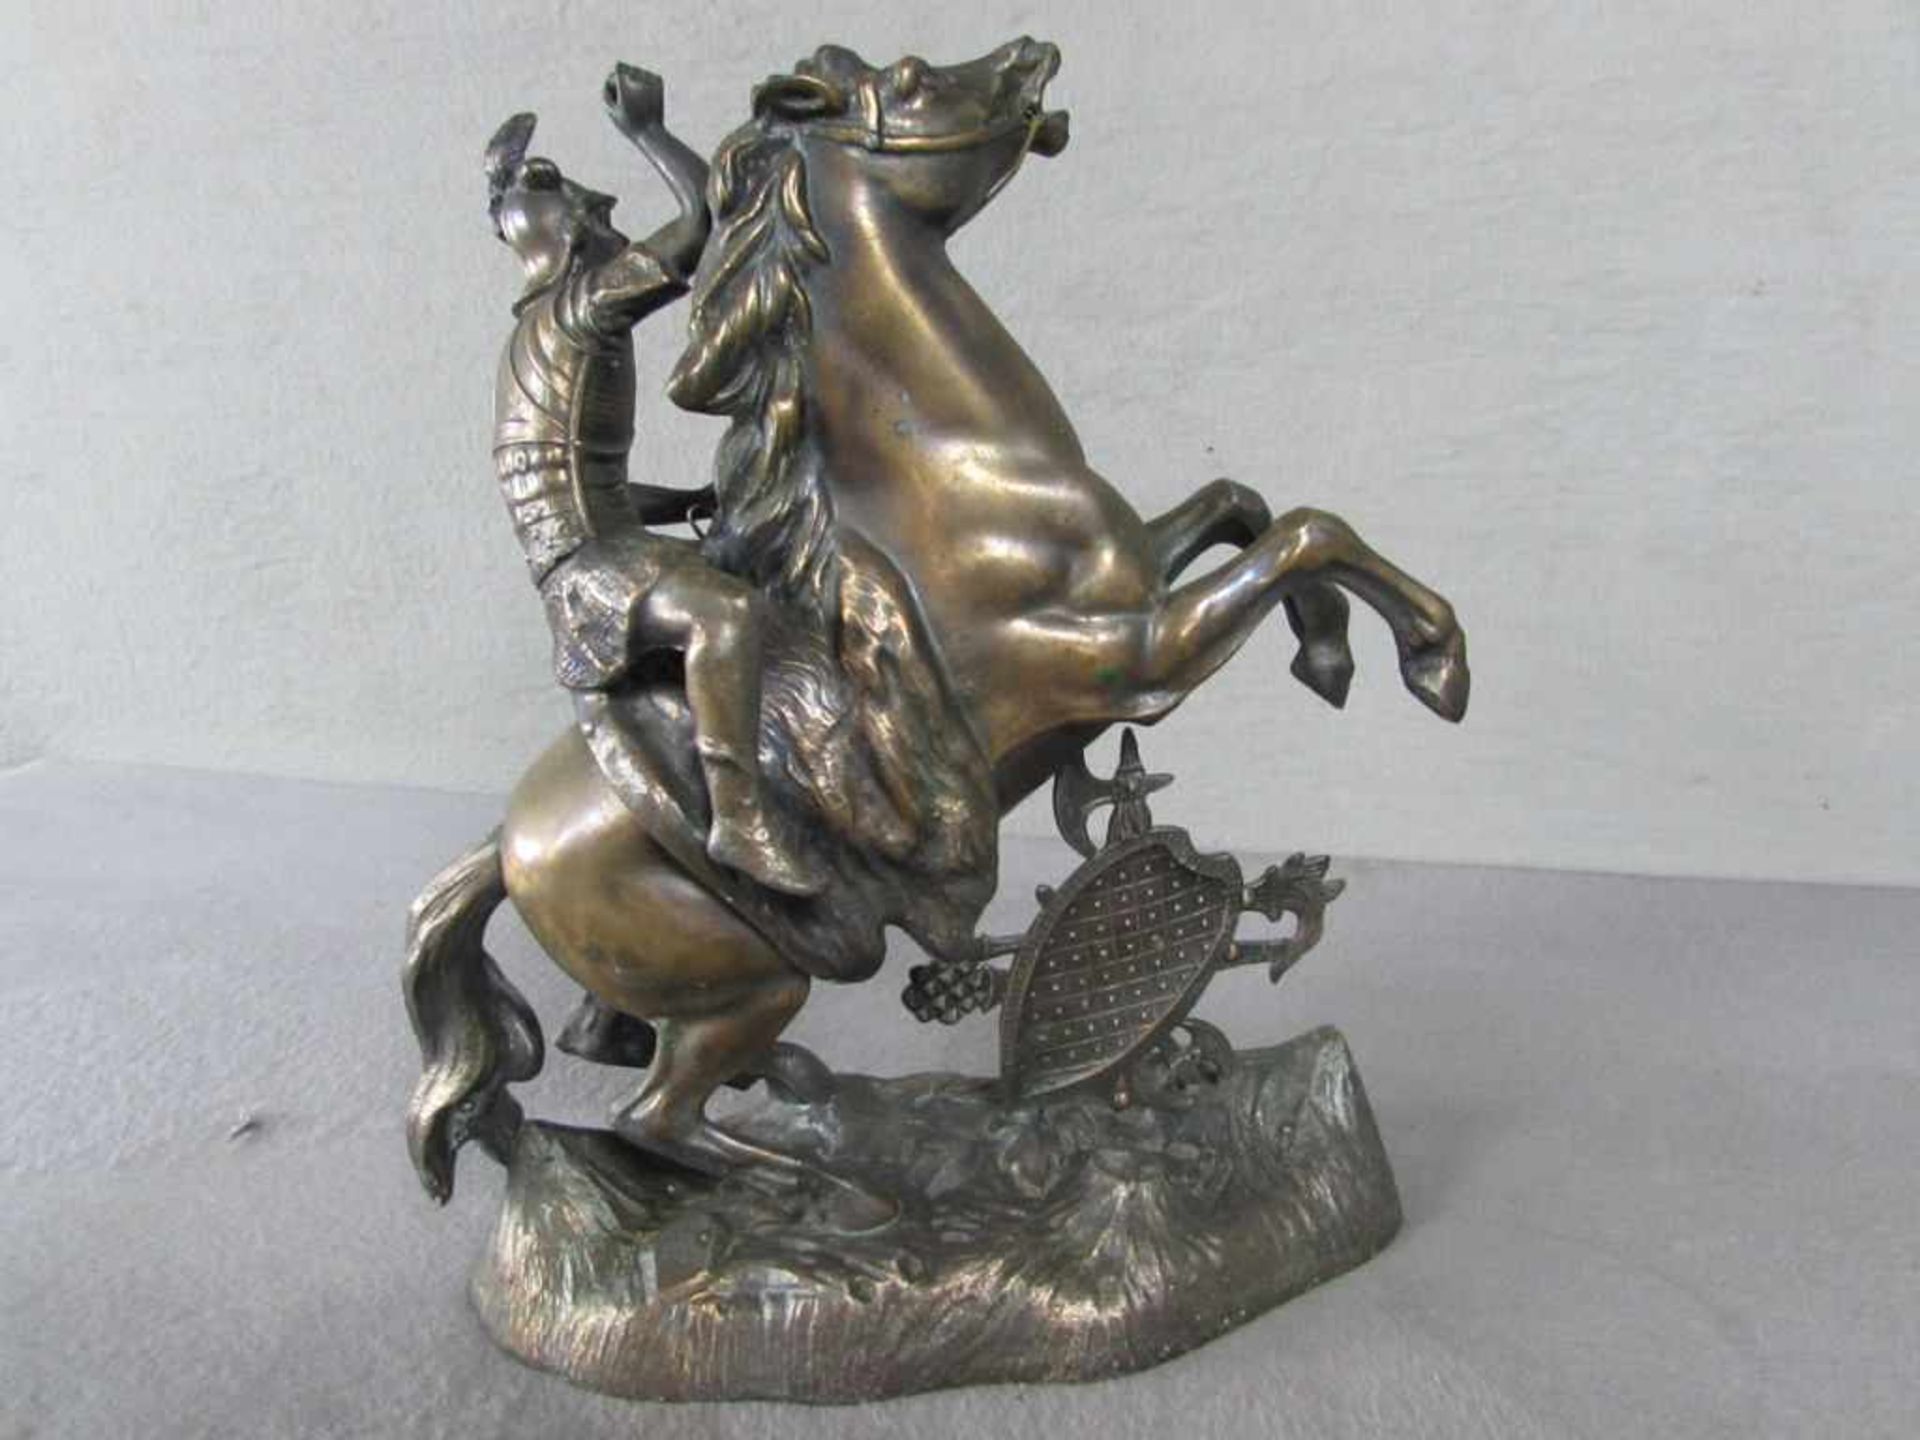 Skulptur Metall Kämpfer auf aufsteigendem Pferd 28cm hoch - Image 3 of 3